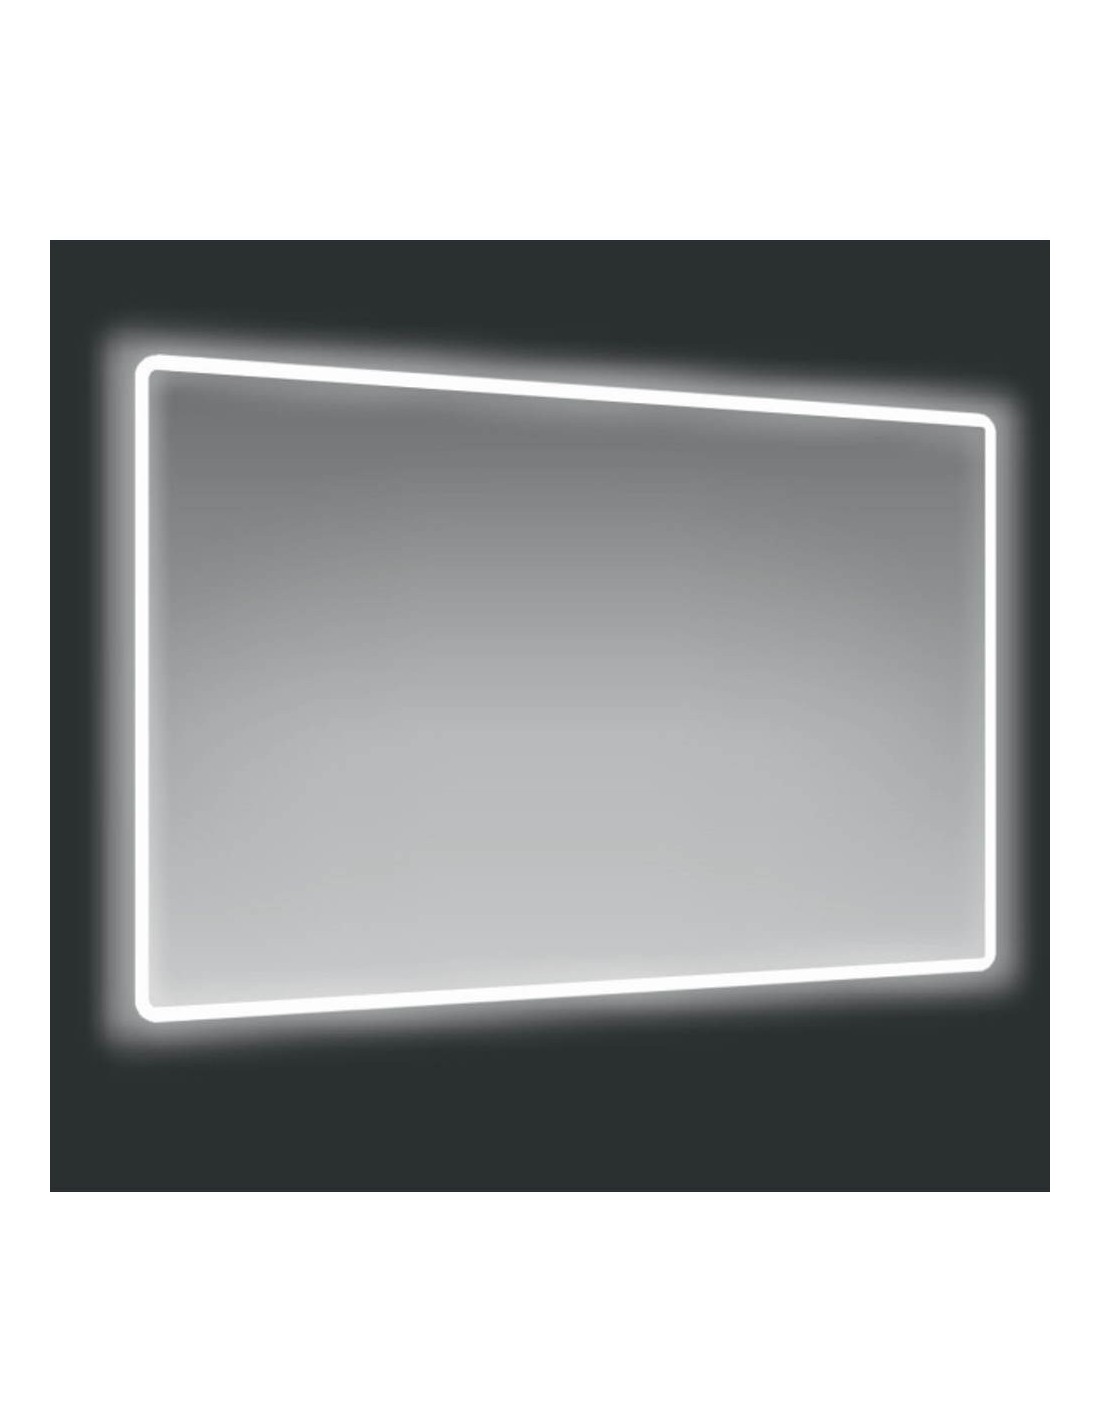 Specchio 90x75 cm. con cornice LED Victoria